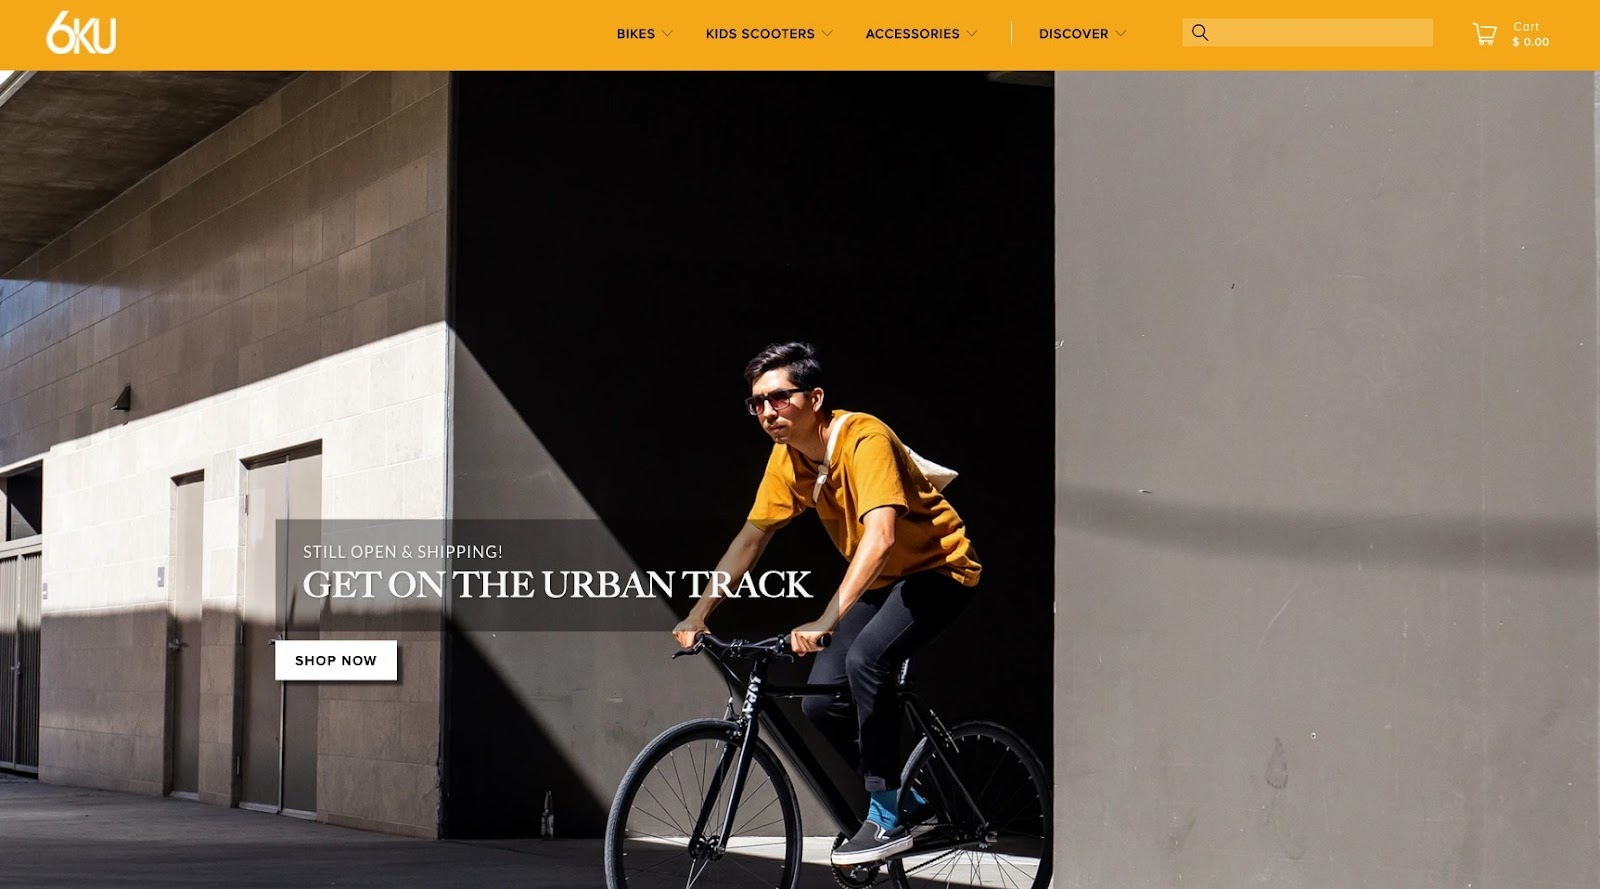 6ku urban track bike homepage